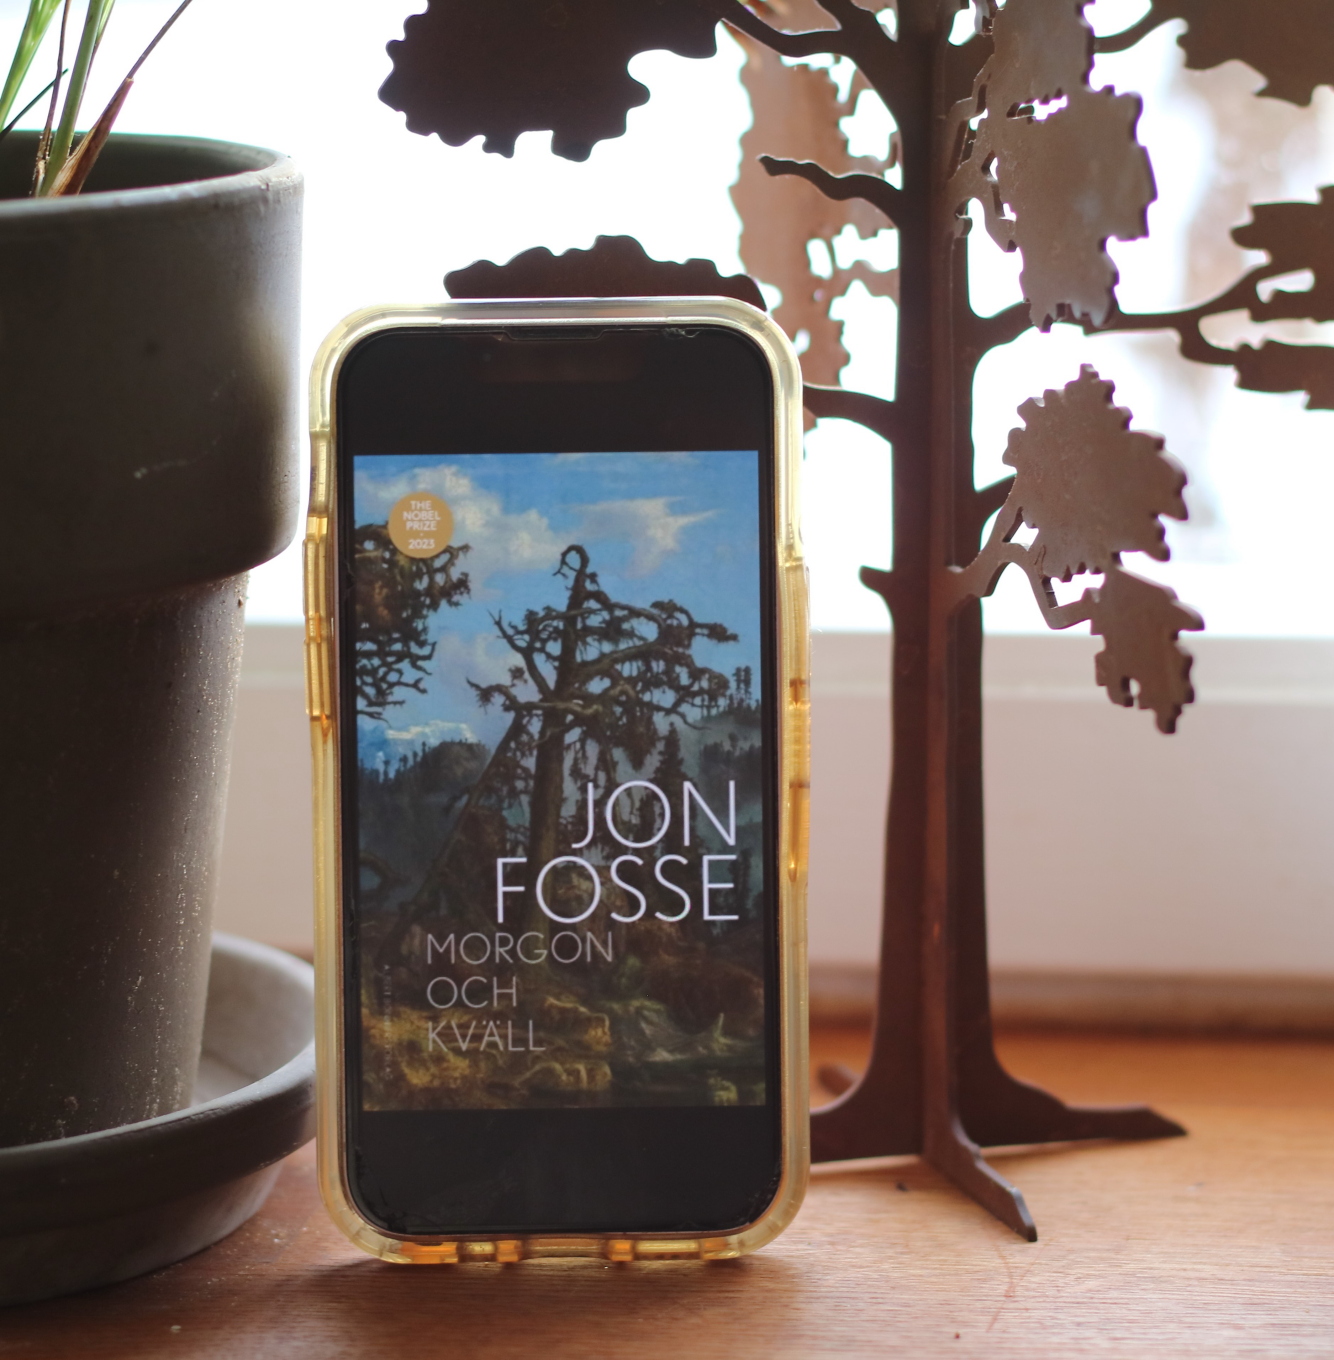 Morgon och kväll av Jon Fosse